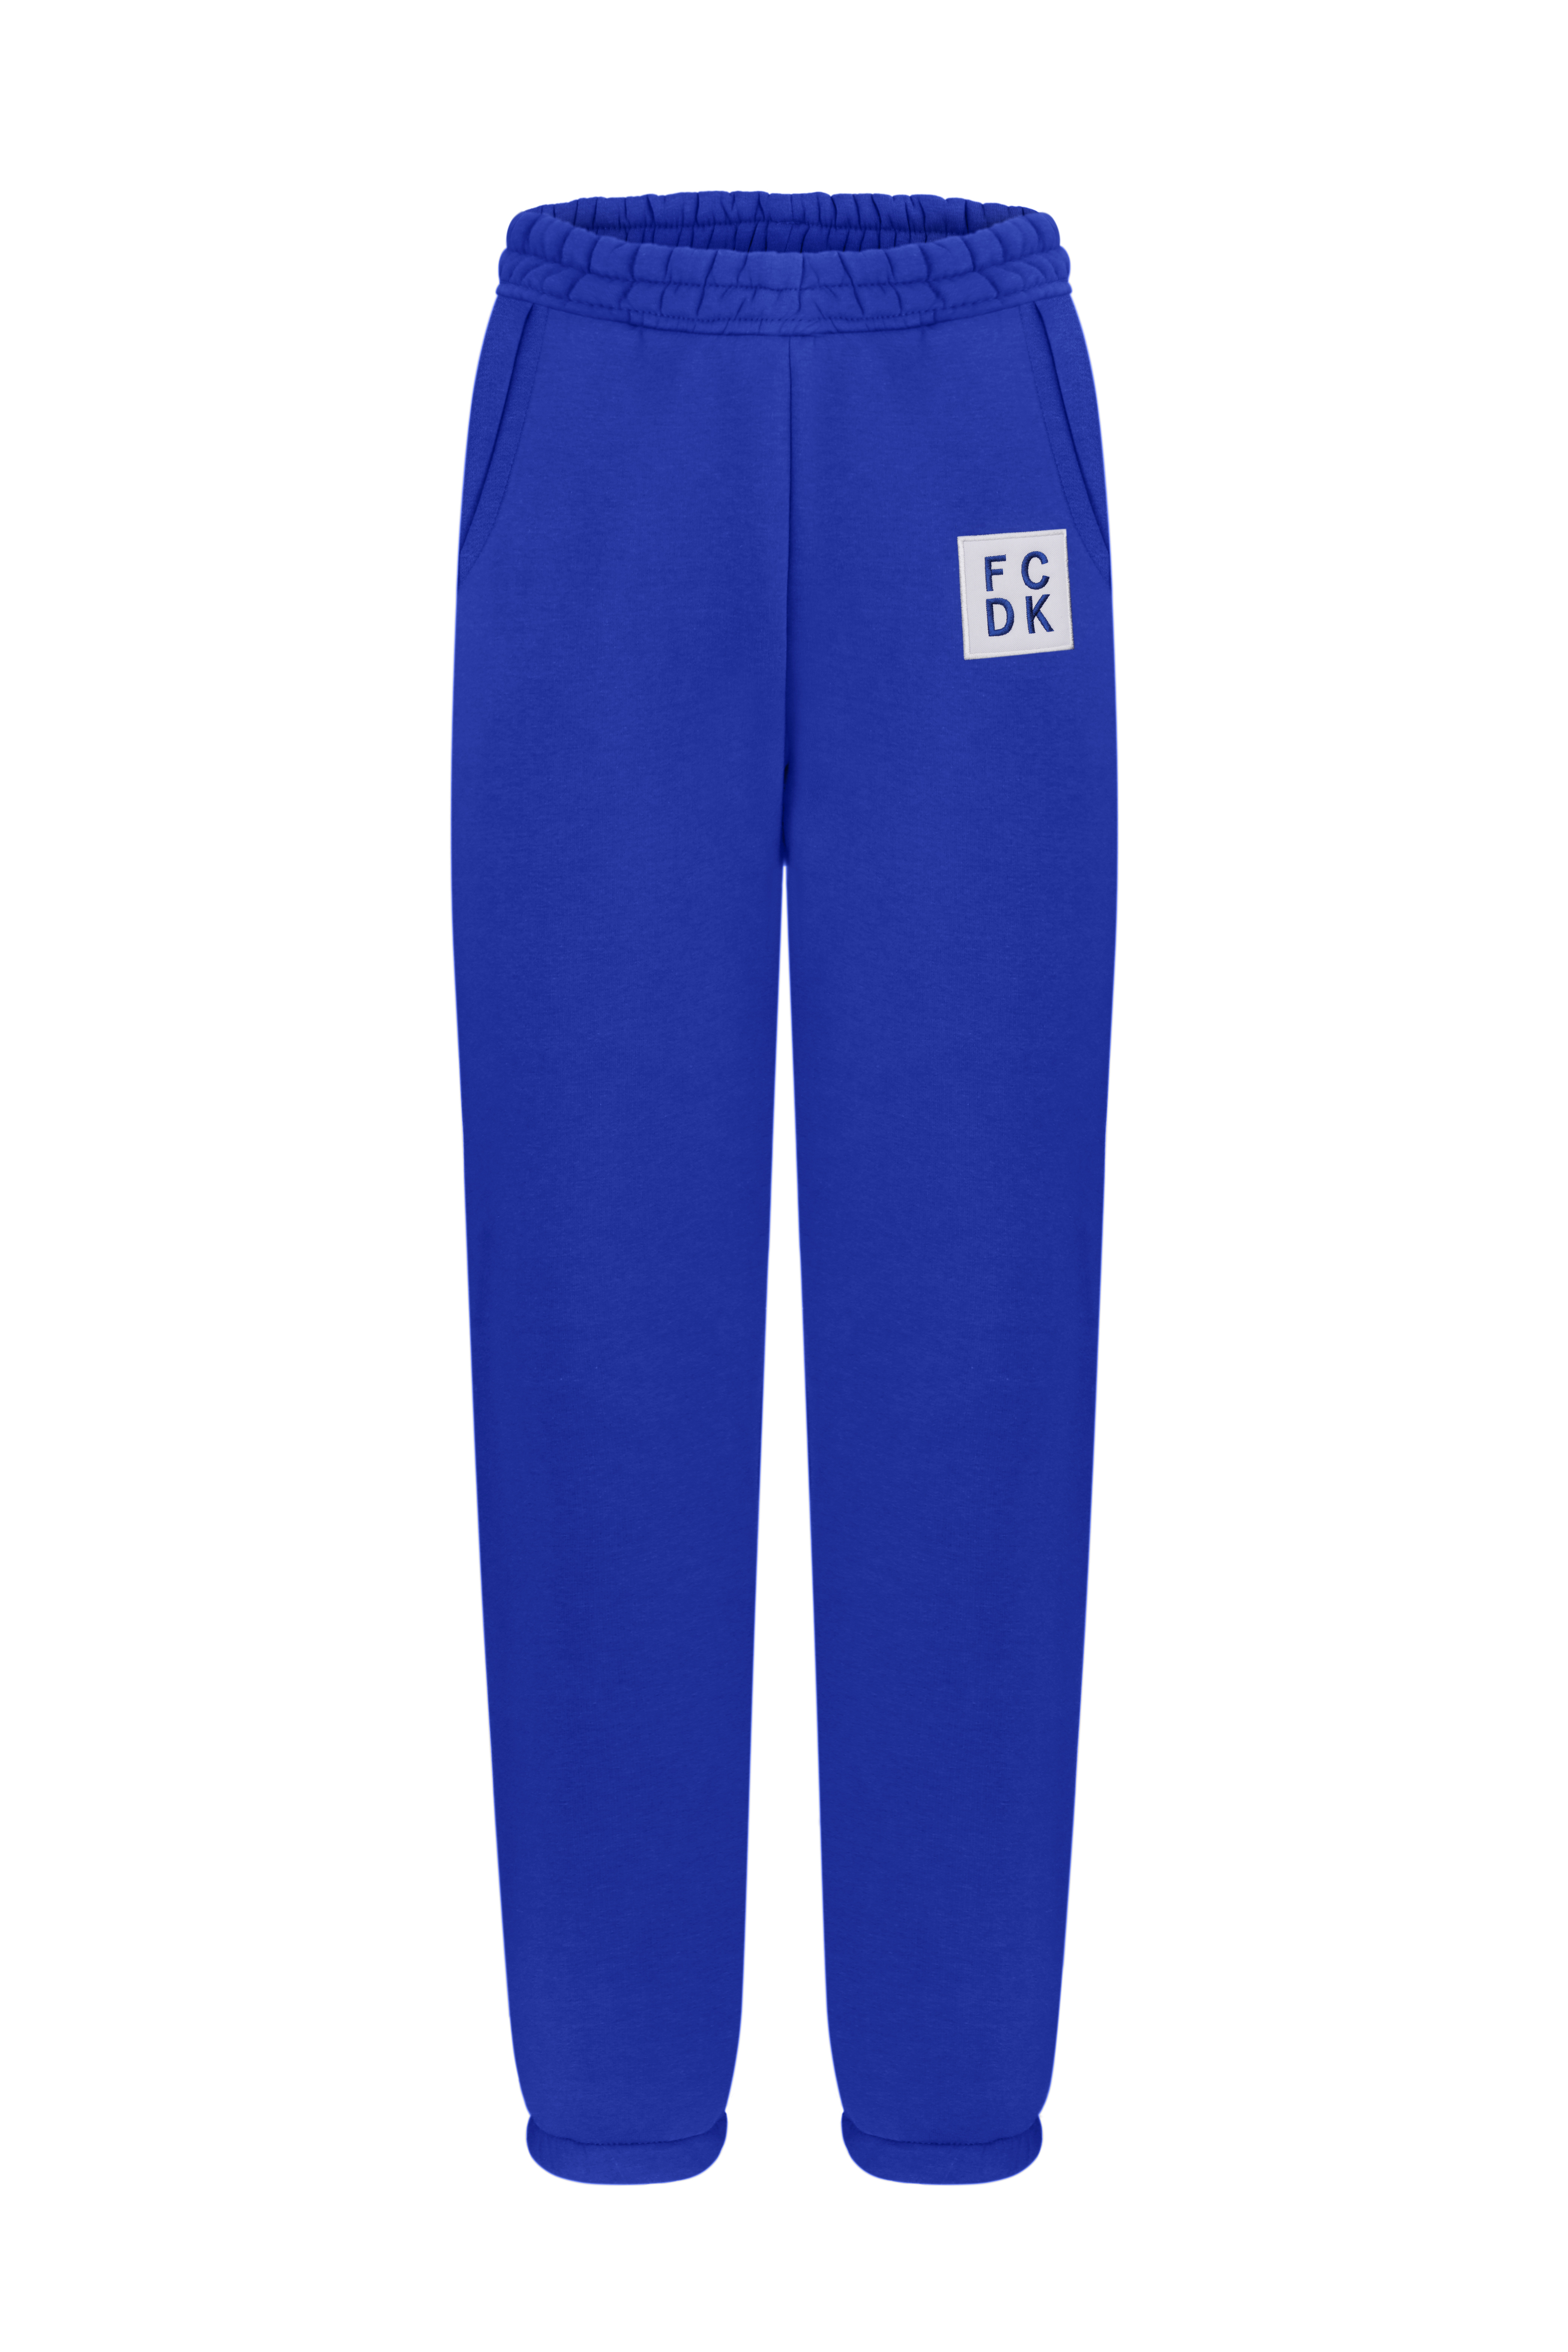 Теплые брюки "FCDK", синие